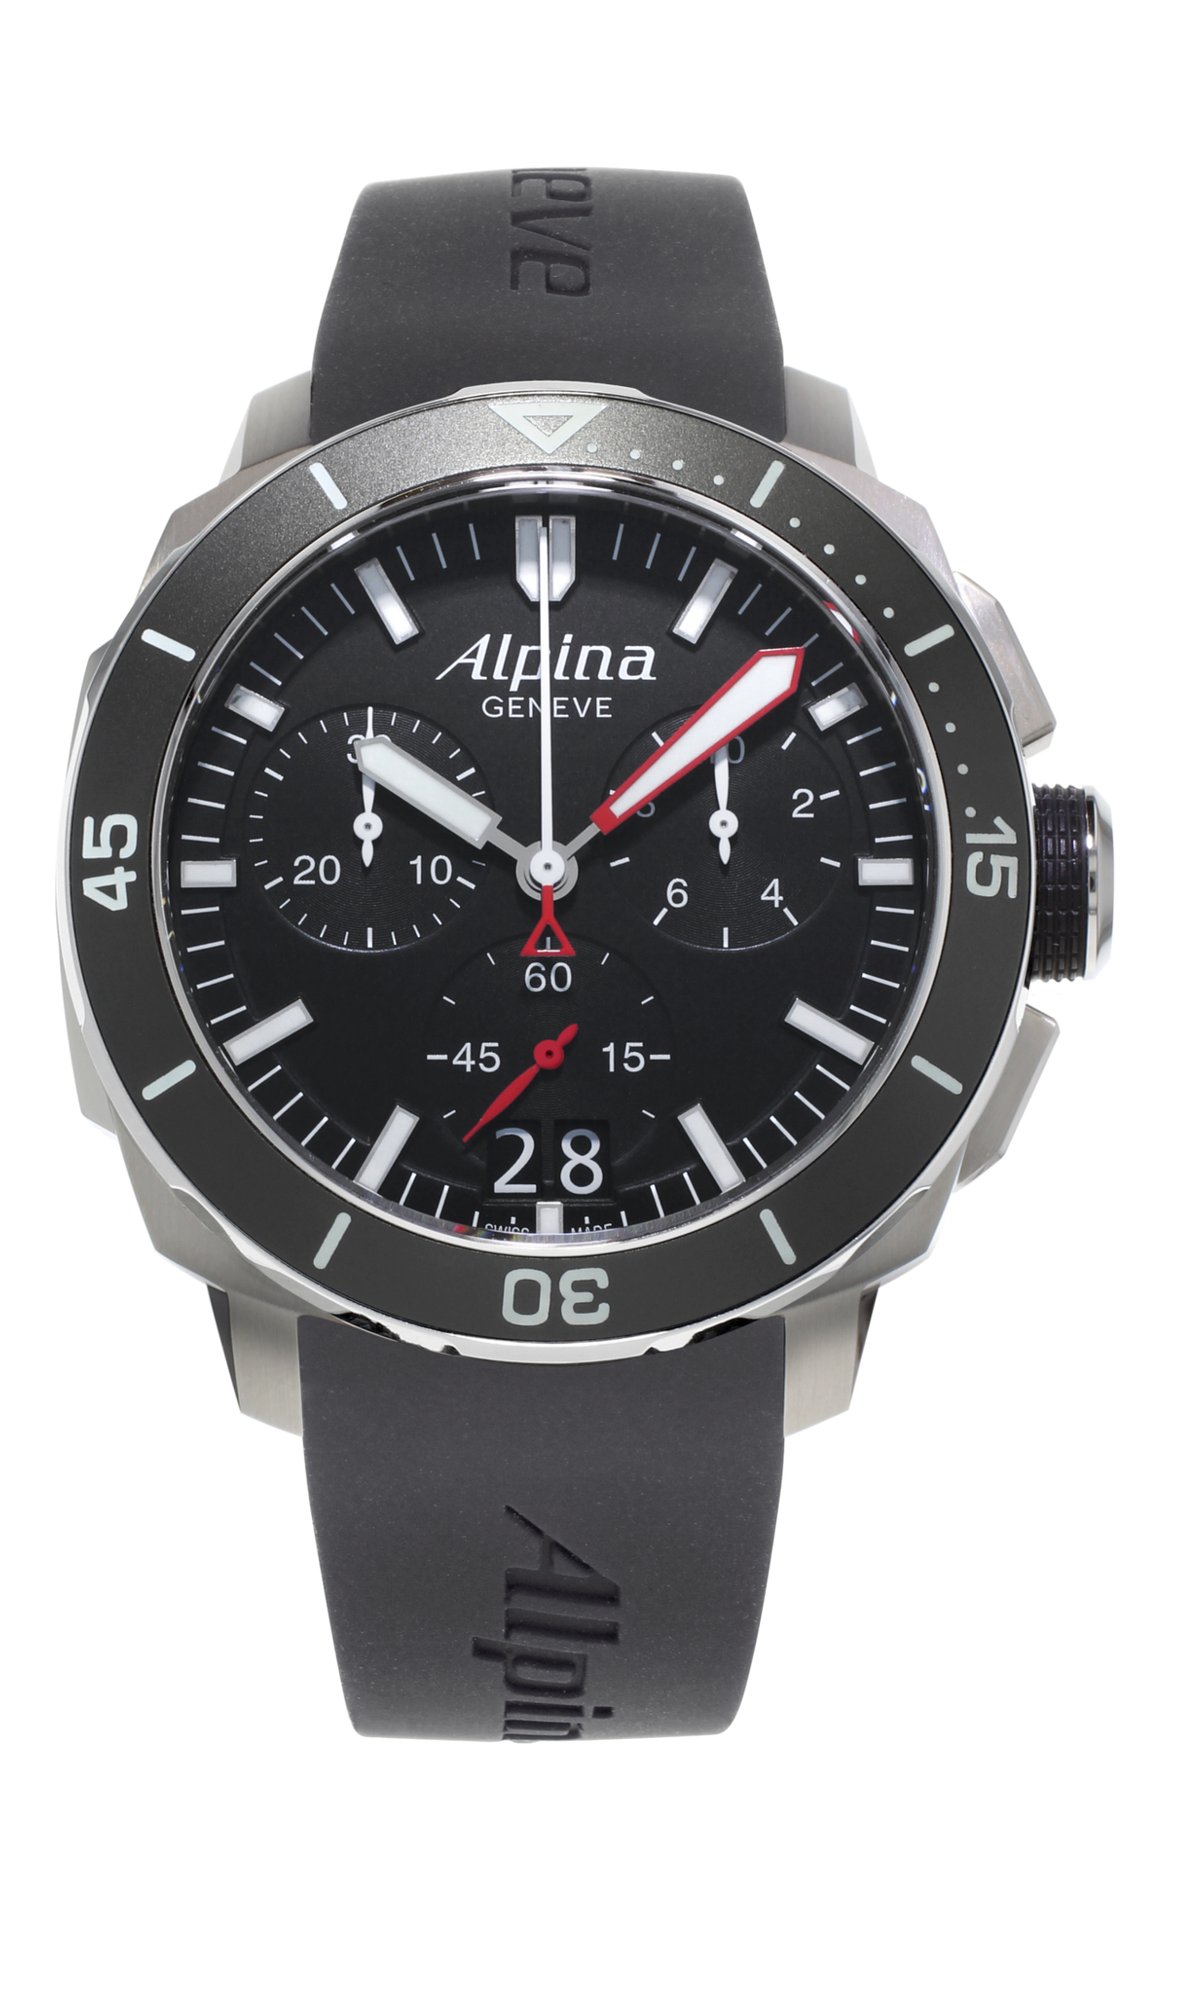 Alpina часы. Наручные часы Alpina al-372lbg4v6. Alpina часы Seastrong Diver. Alpina al860s5aq6. Наручные часы Alpina al-525lbbrg4v6.